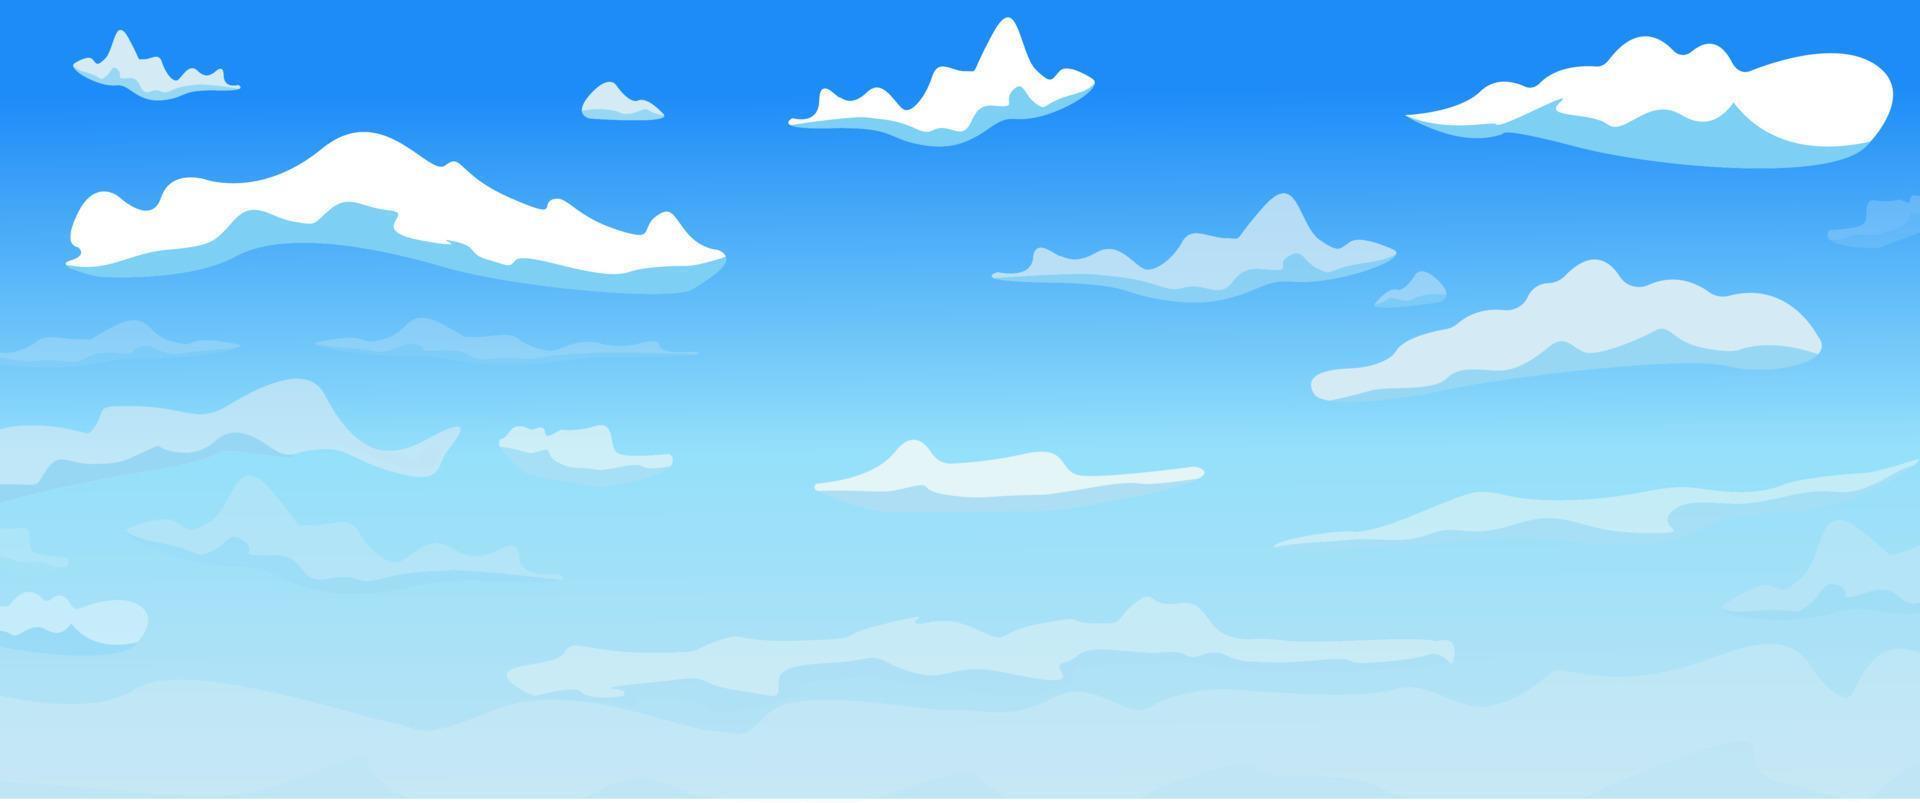 Vẽ chibi trên nền bầu trời xanh biển sẽ mang lại cho bạn một cảm giác nhẹ nhàng và vui tươi. Với Cartoon sky vector, bạn sẽ cảm nhận được sự đầy sức sống và sáng tạo đang lan tỏa xung quanh.